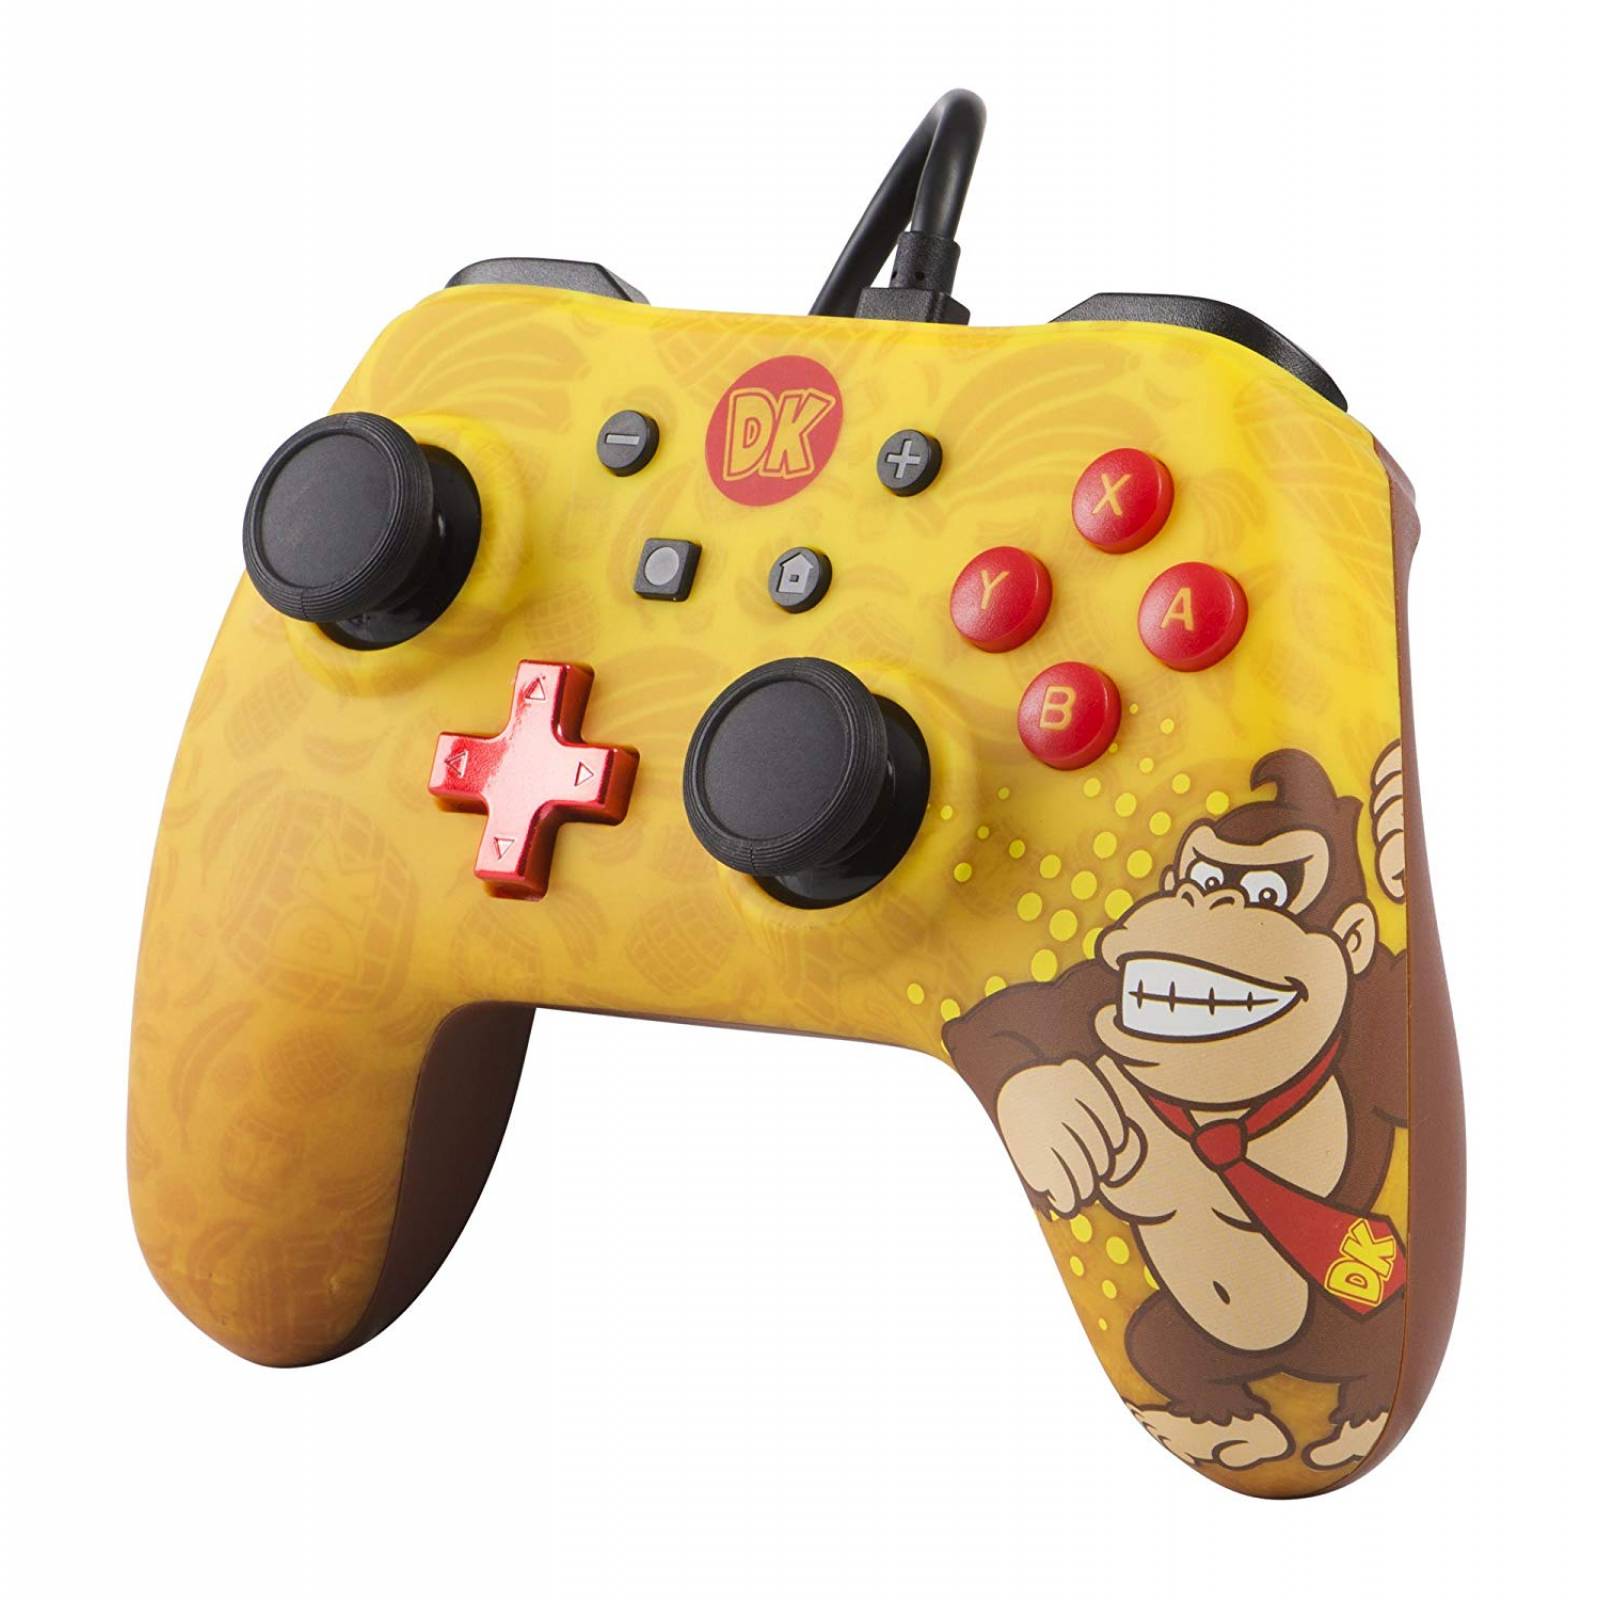 Control Nintendo Switch Donkey Kong PowerA - Alambrico